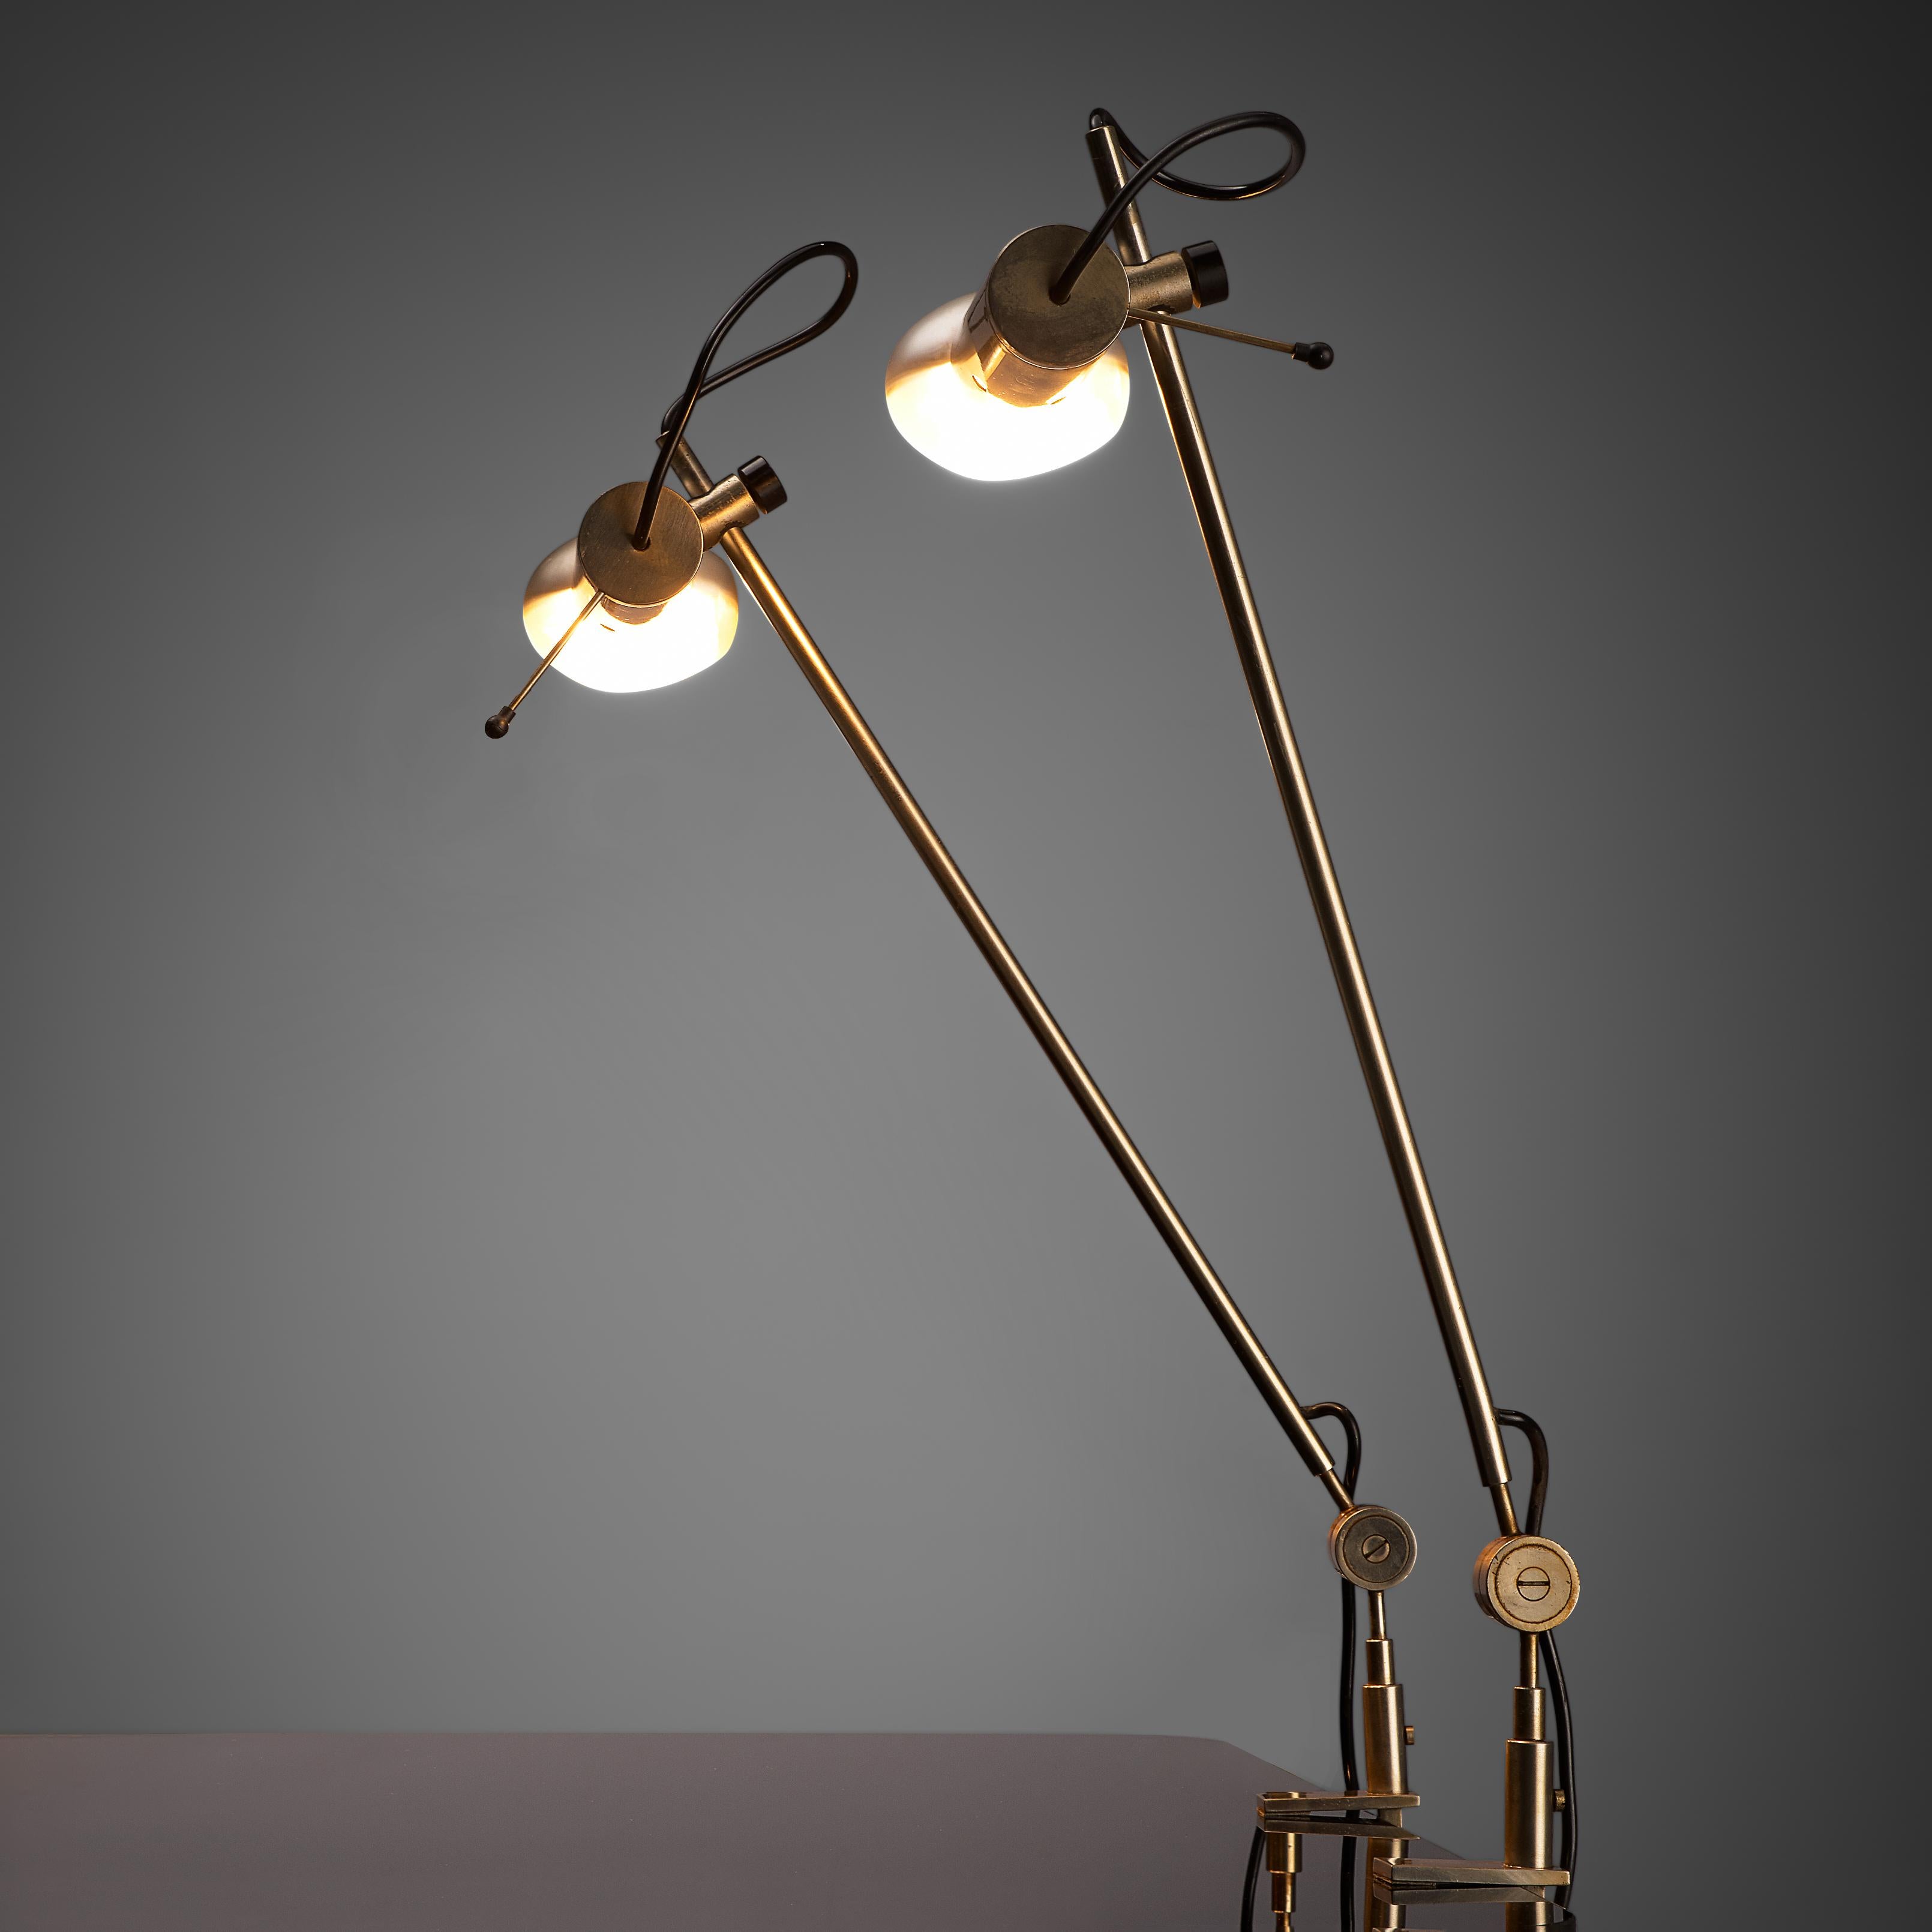 Tito Agnoli pour O-Luce, lampes de bureau 'Cornalux', métal, Italie, 1964.

Lampes de table modernes conçues par Tito Agnoli. L'ampoule possède un réflecteur à l'intérieur et le cadre est en acier, ce qui donne à la lampe son aspect minimaliste. Un